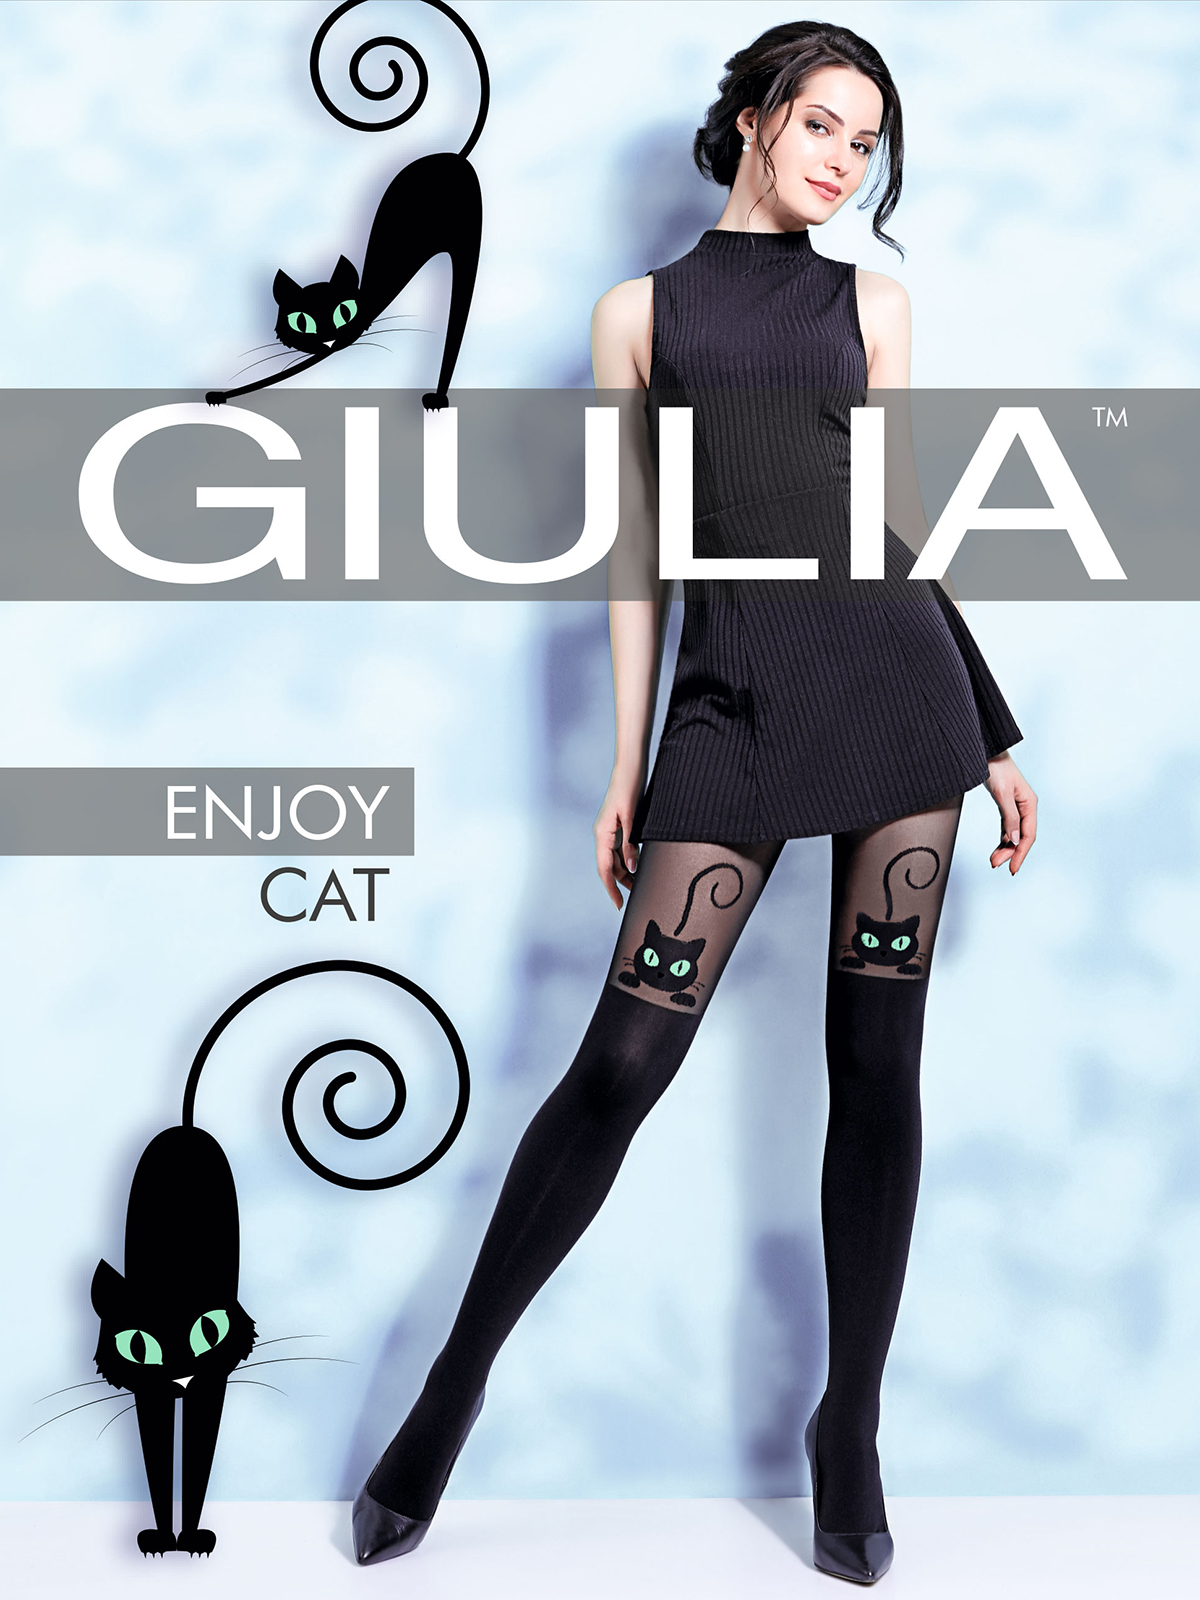 Колготки Giulia enjoy Cat